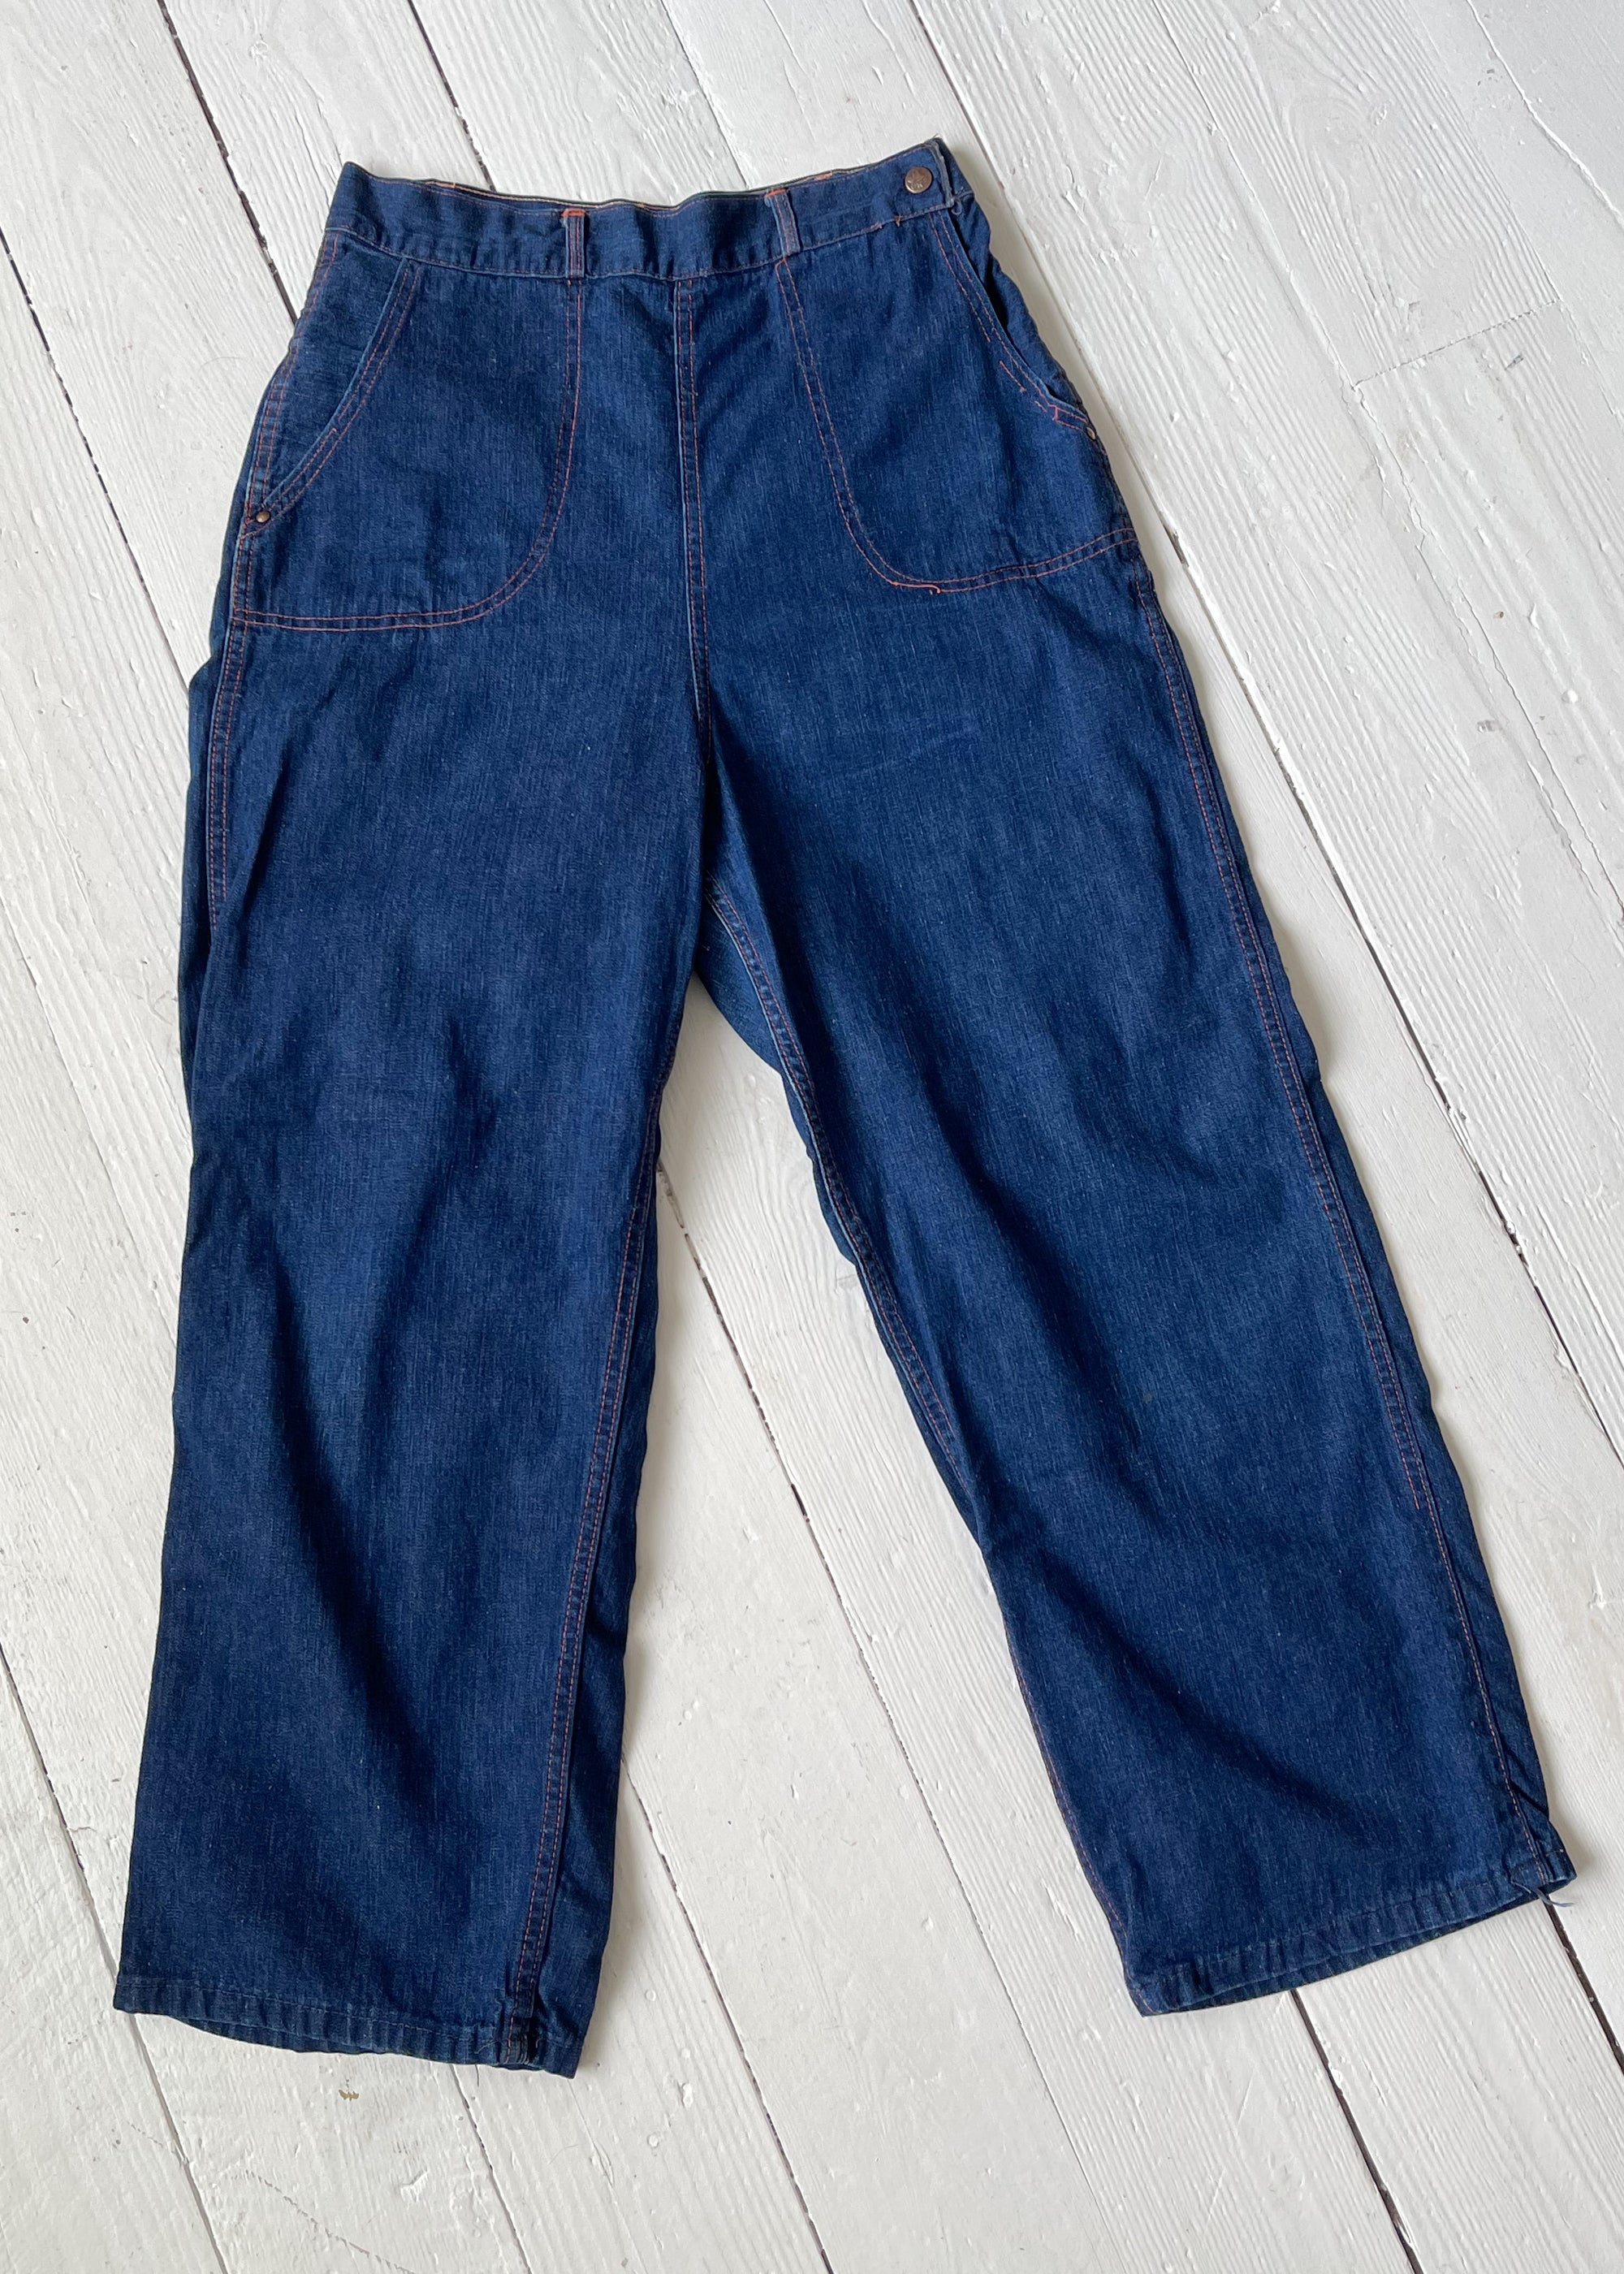 Vintage 1950s Side Zip Jeans - Raleigh Vintage